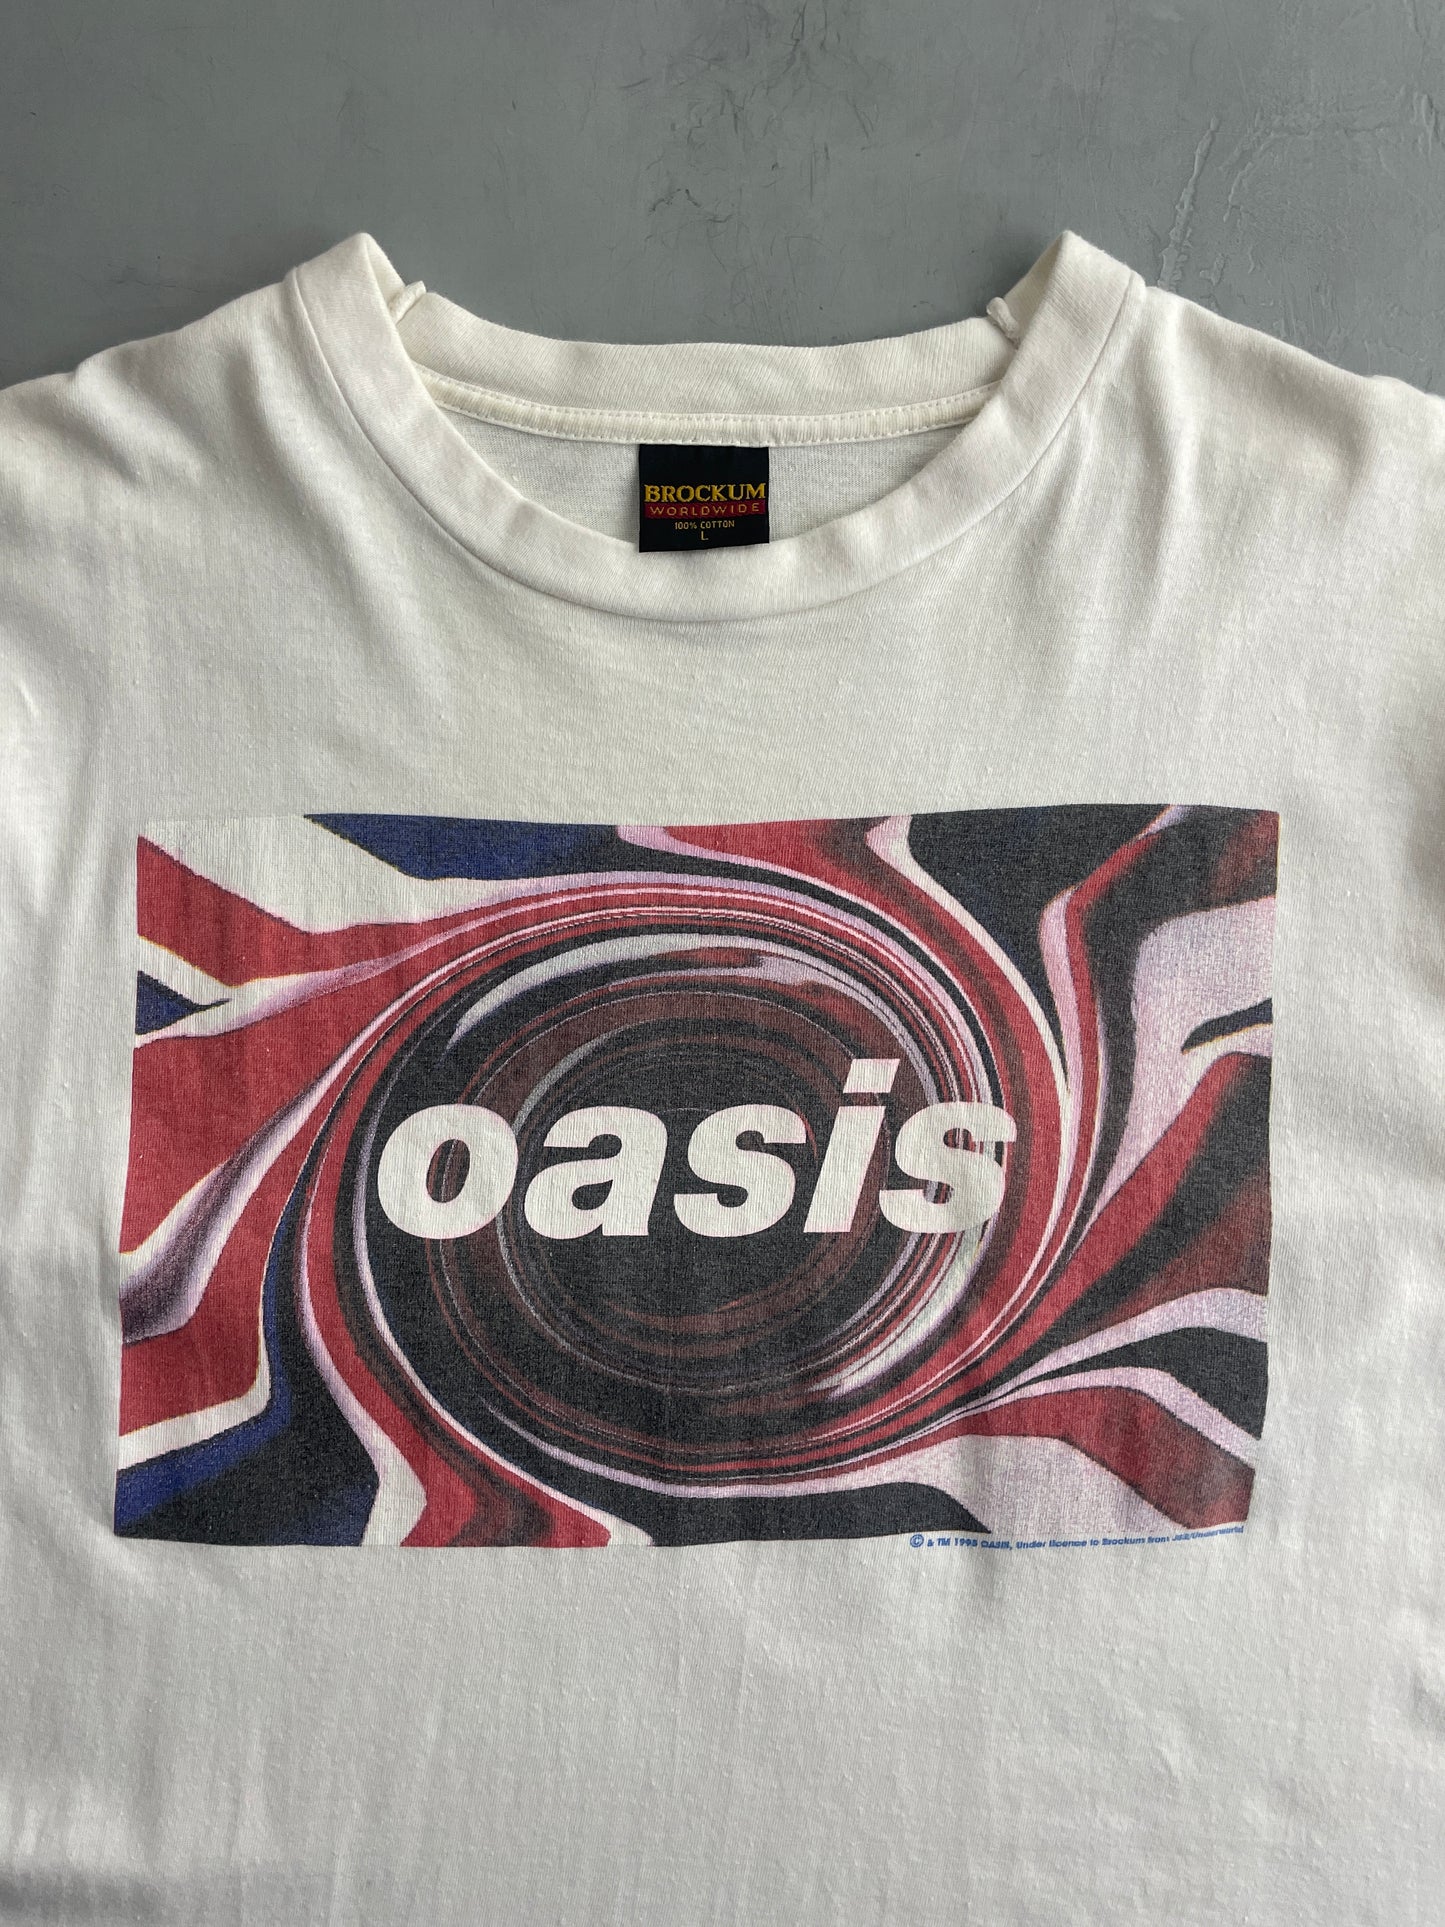 '95 Oasis Union Jack Tee [L]